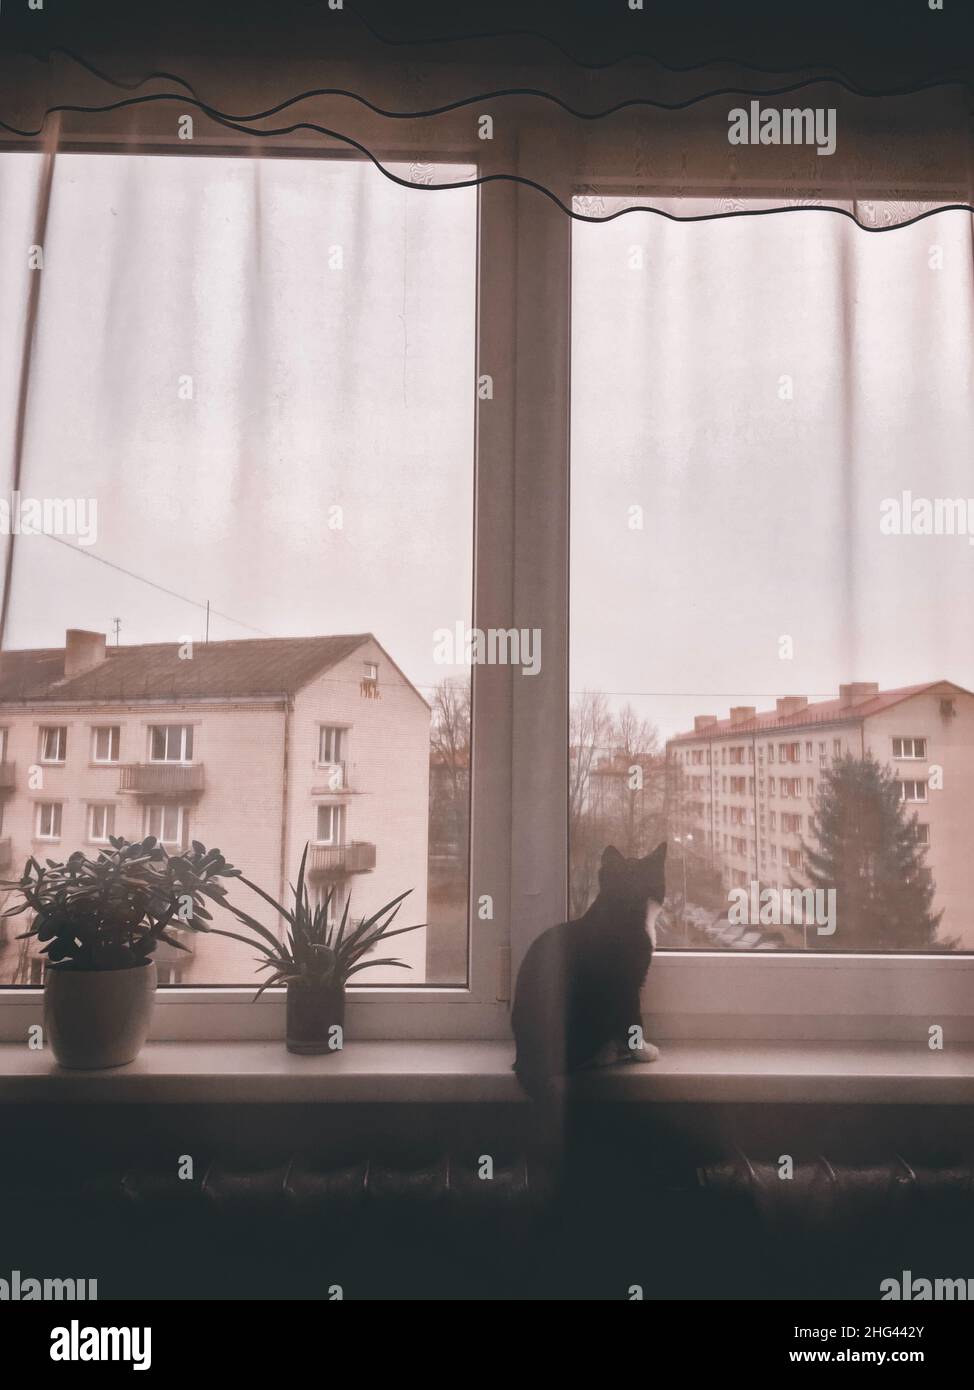 Un chat noir est assis sur un rebord de fenêtre et regarde la fenêtre.Le chat se cache derrière des rideaux Banque D'Images